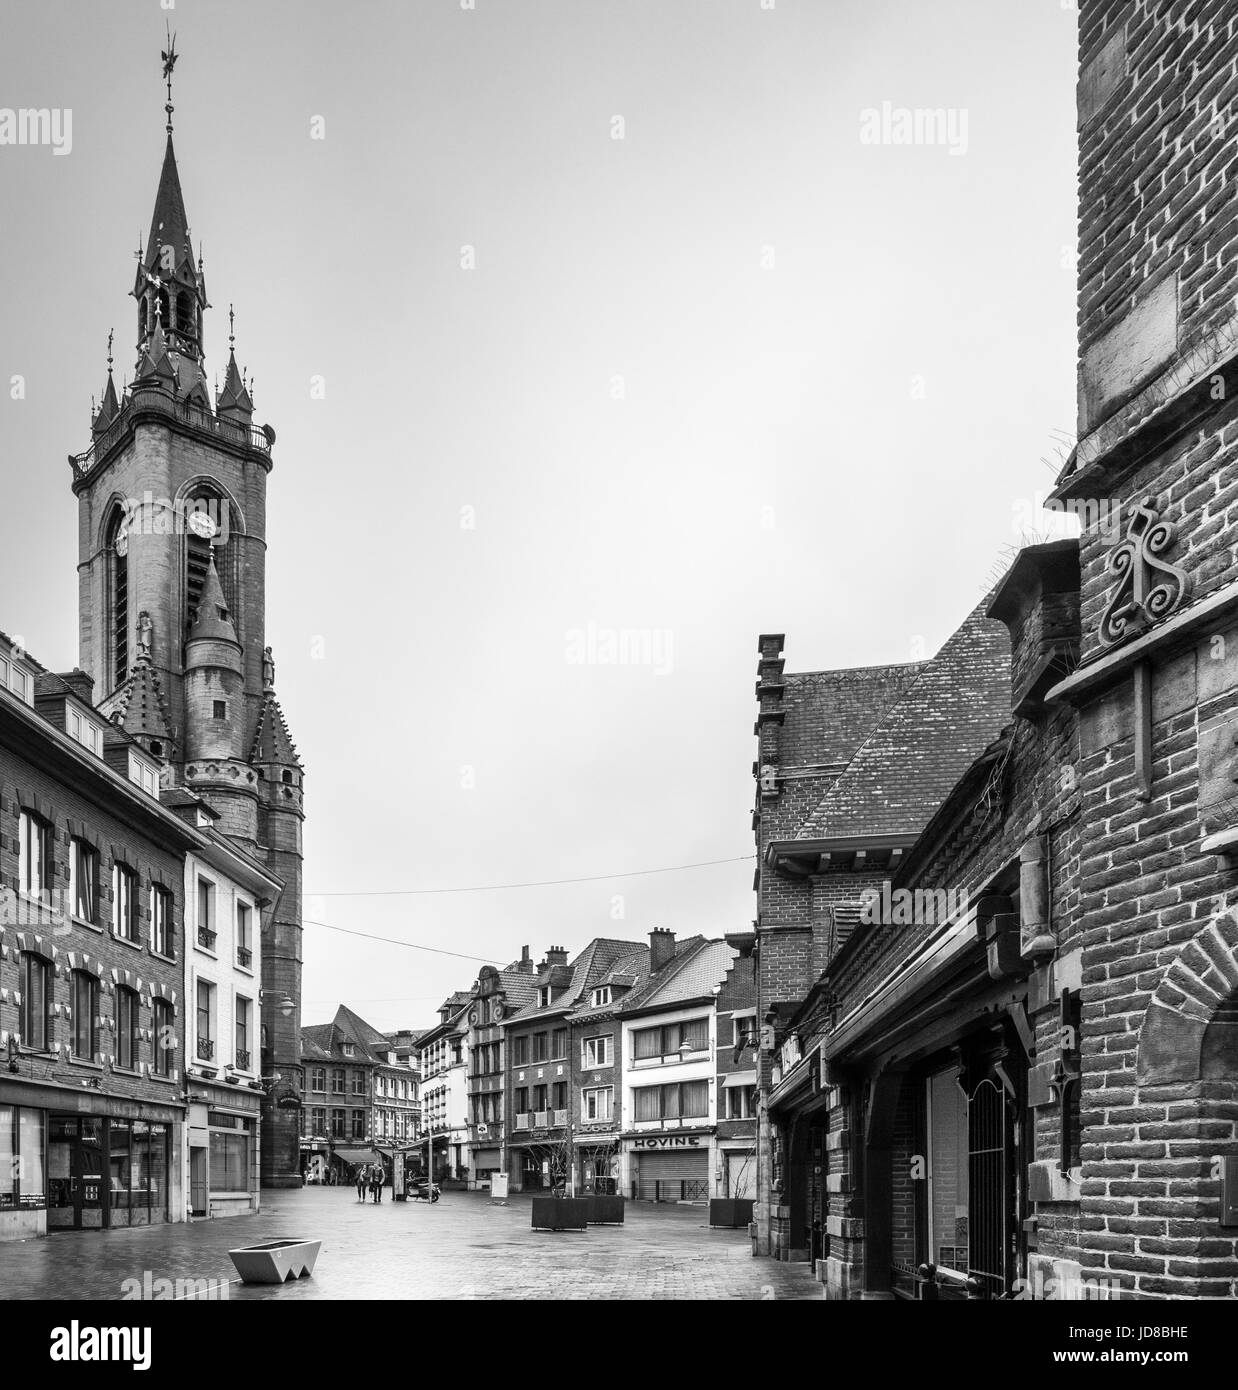 Bâtiments et tower dans le centre ville, noir et blanc, Belgique. tournai Belgique Europe Vieille ville Banque D'Images